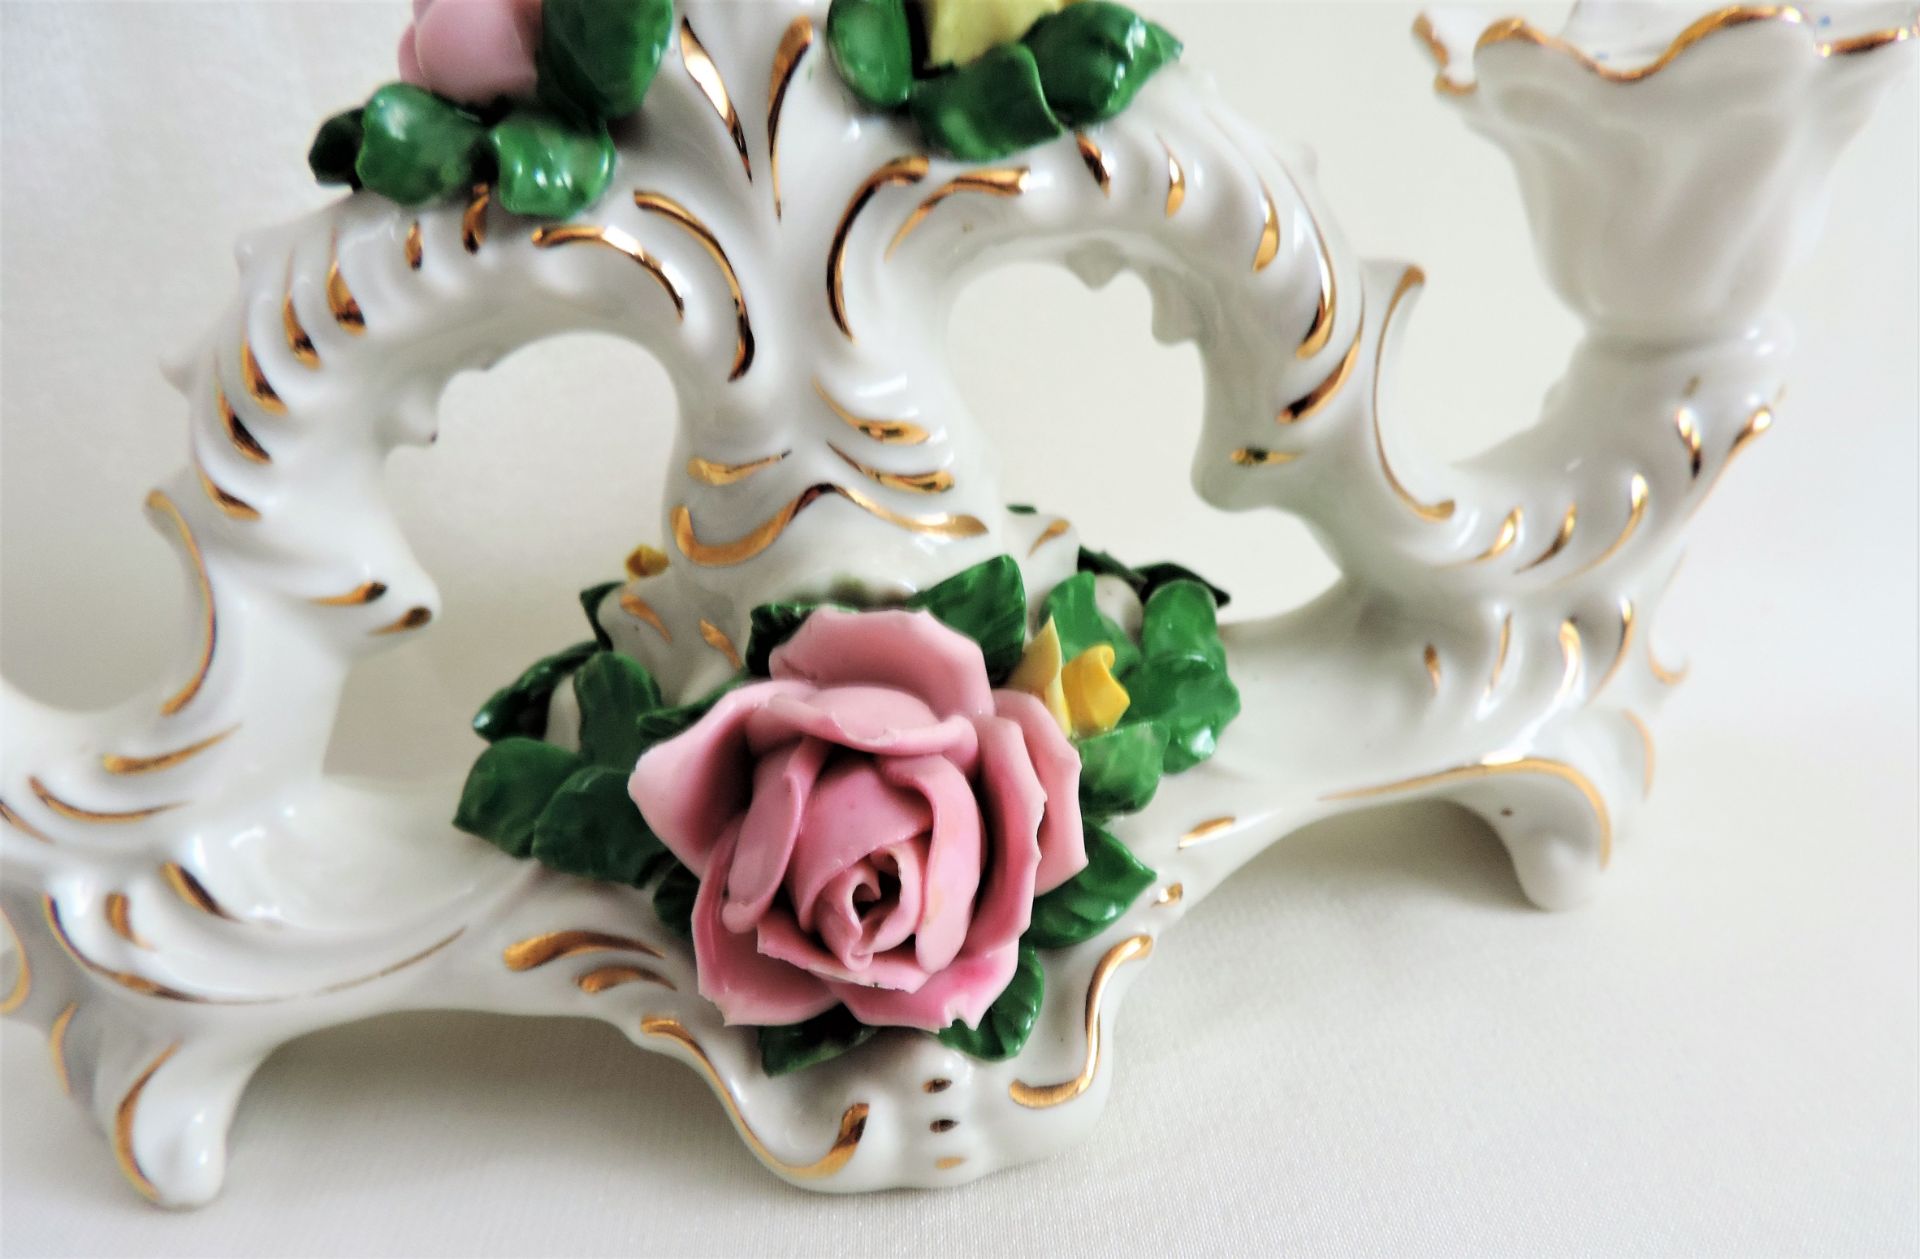 Dresden Porcelain Candelabra 3 Branch Table Centrepiece - Image 4 of 5